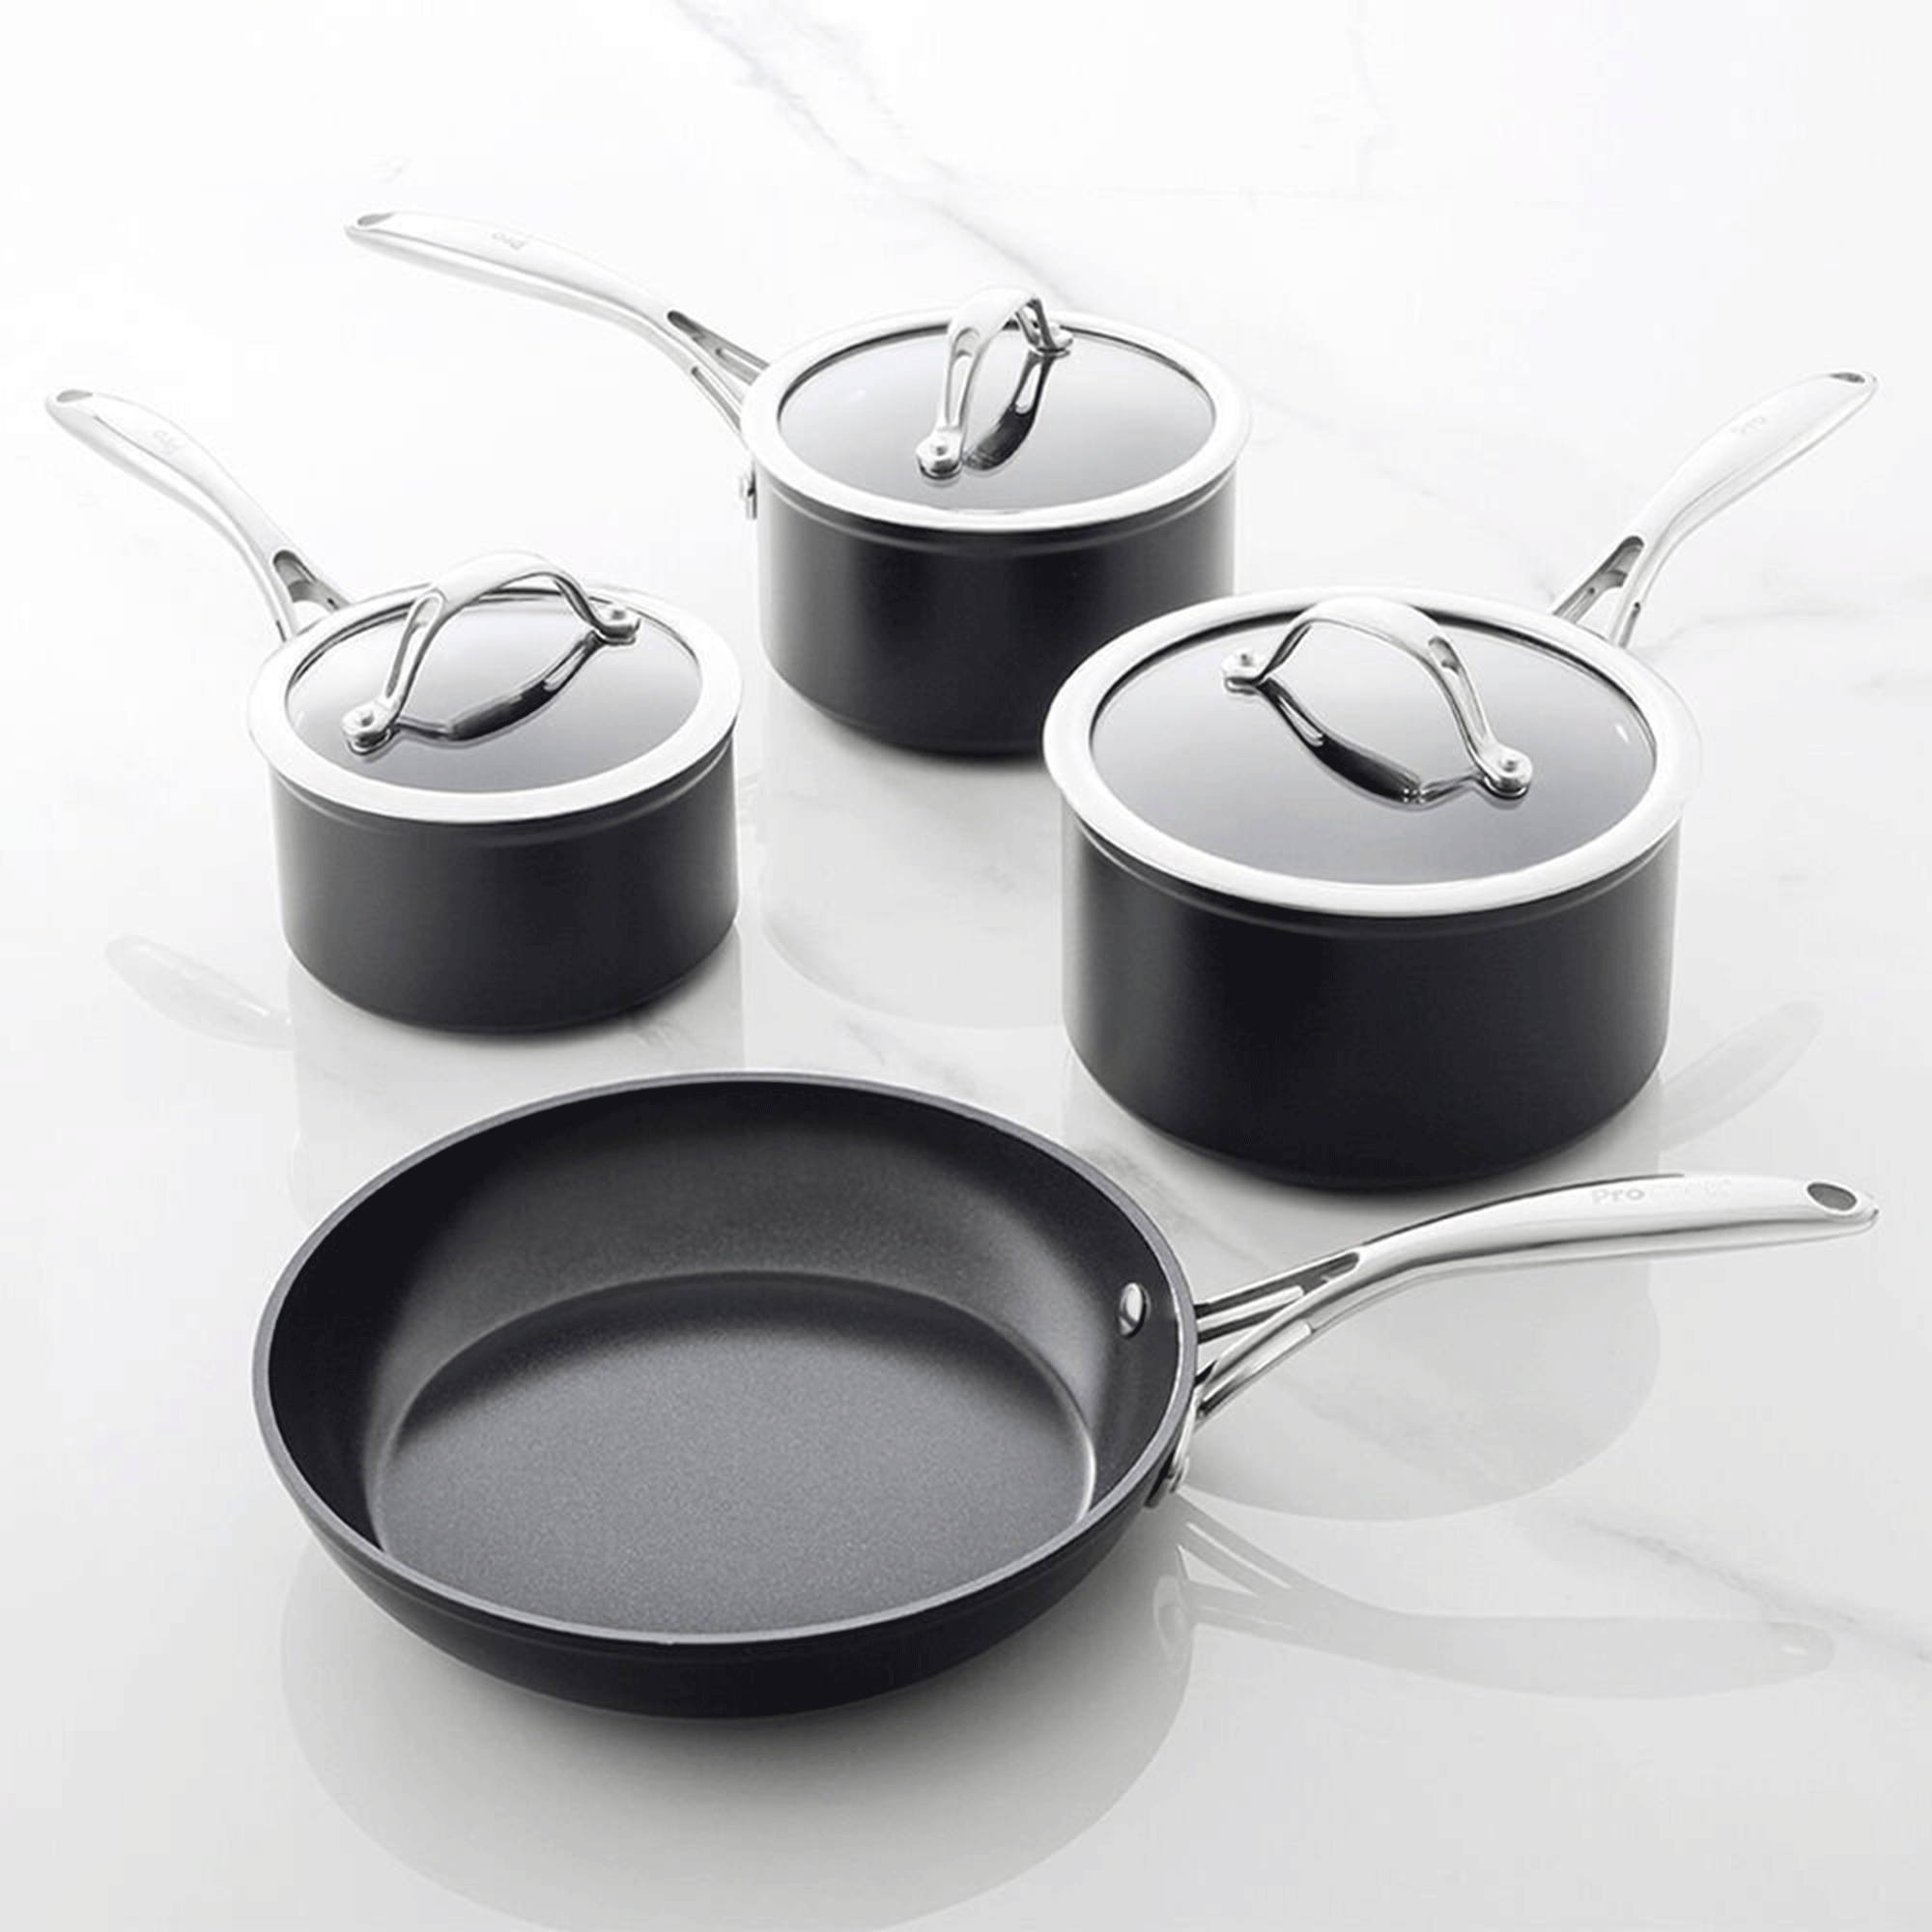 Black ceramic procook pans